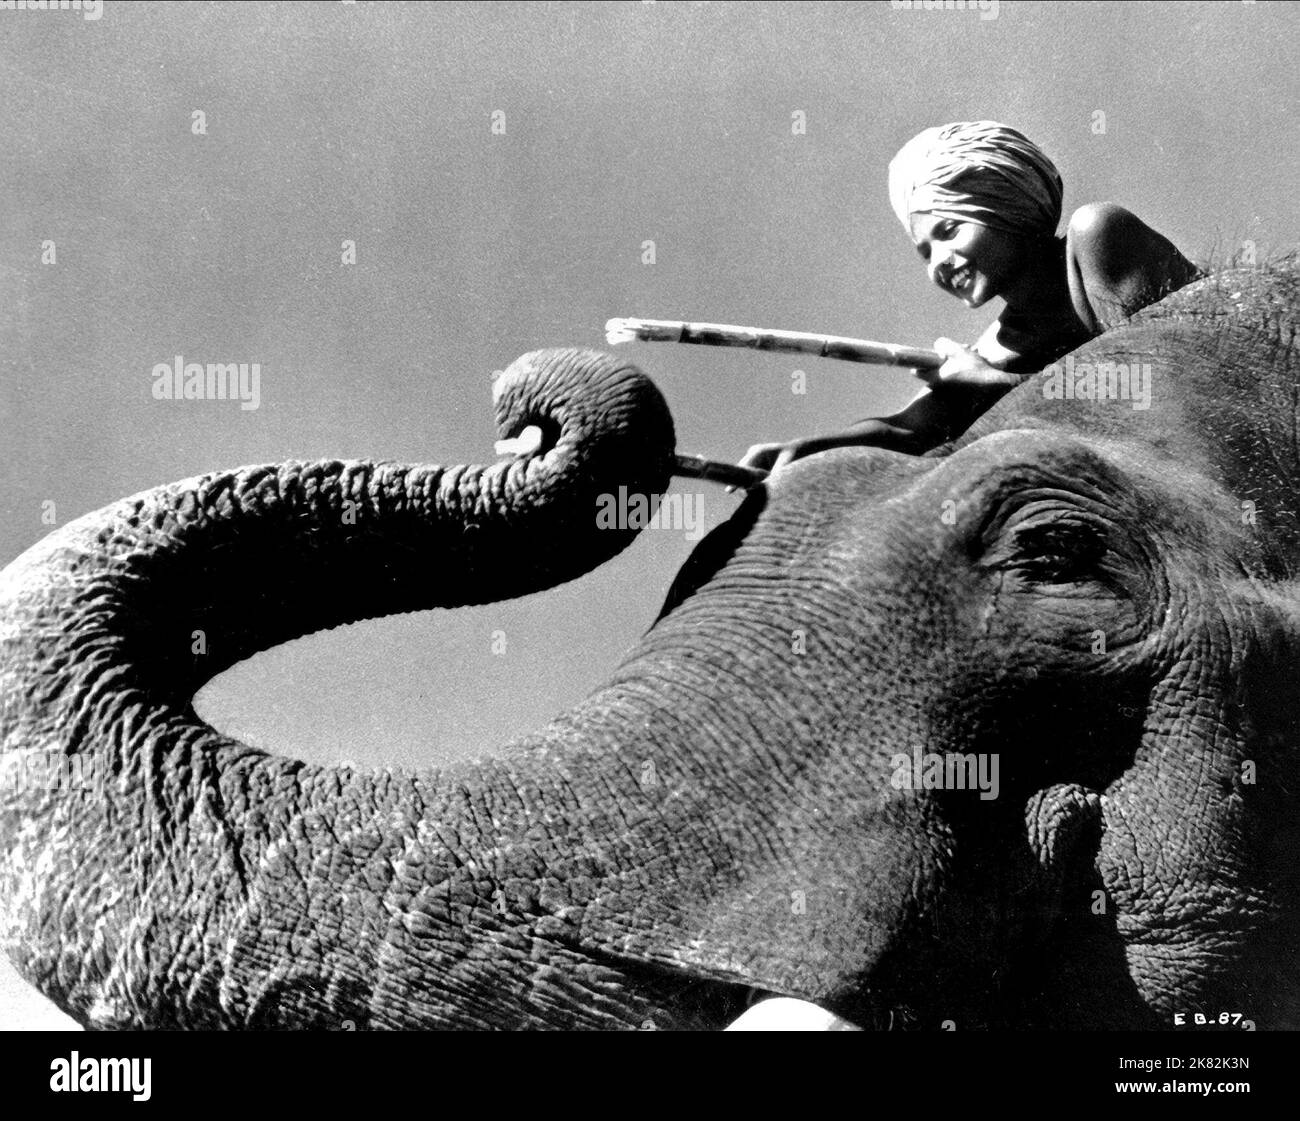 Film Sabu: Elephant Boy (UK 1937) personnages: Toomai & / Literaturverfilmung (basé sur l'histoire "Toomai des éléphants" de Rudyard Kipling) Directeur: Robert Flaherty & Zoltan Korda 08 février 1937 **AVERTISSEMENT** cette photographie est destinée à un usage éditorial exclusif et est protégée par les droits d'auteur des PRODUCTIONS CINÉMATOGRAPHIQUES DE LONDRES et/ou du photographe attribué par The film or production Company et ne peut être reproduite que par des publications dans le cadre de la promotion du film ci-dessus. Un crédit obligatoire pour LES PRODUCTIONS CINÉMATOGRAPHIQUES DE LONDRES est requis. Le photographe doit également être crédité lorsqu'il est connu. Aucune utilisation commerciale Banque D'Images